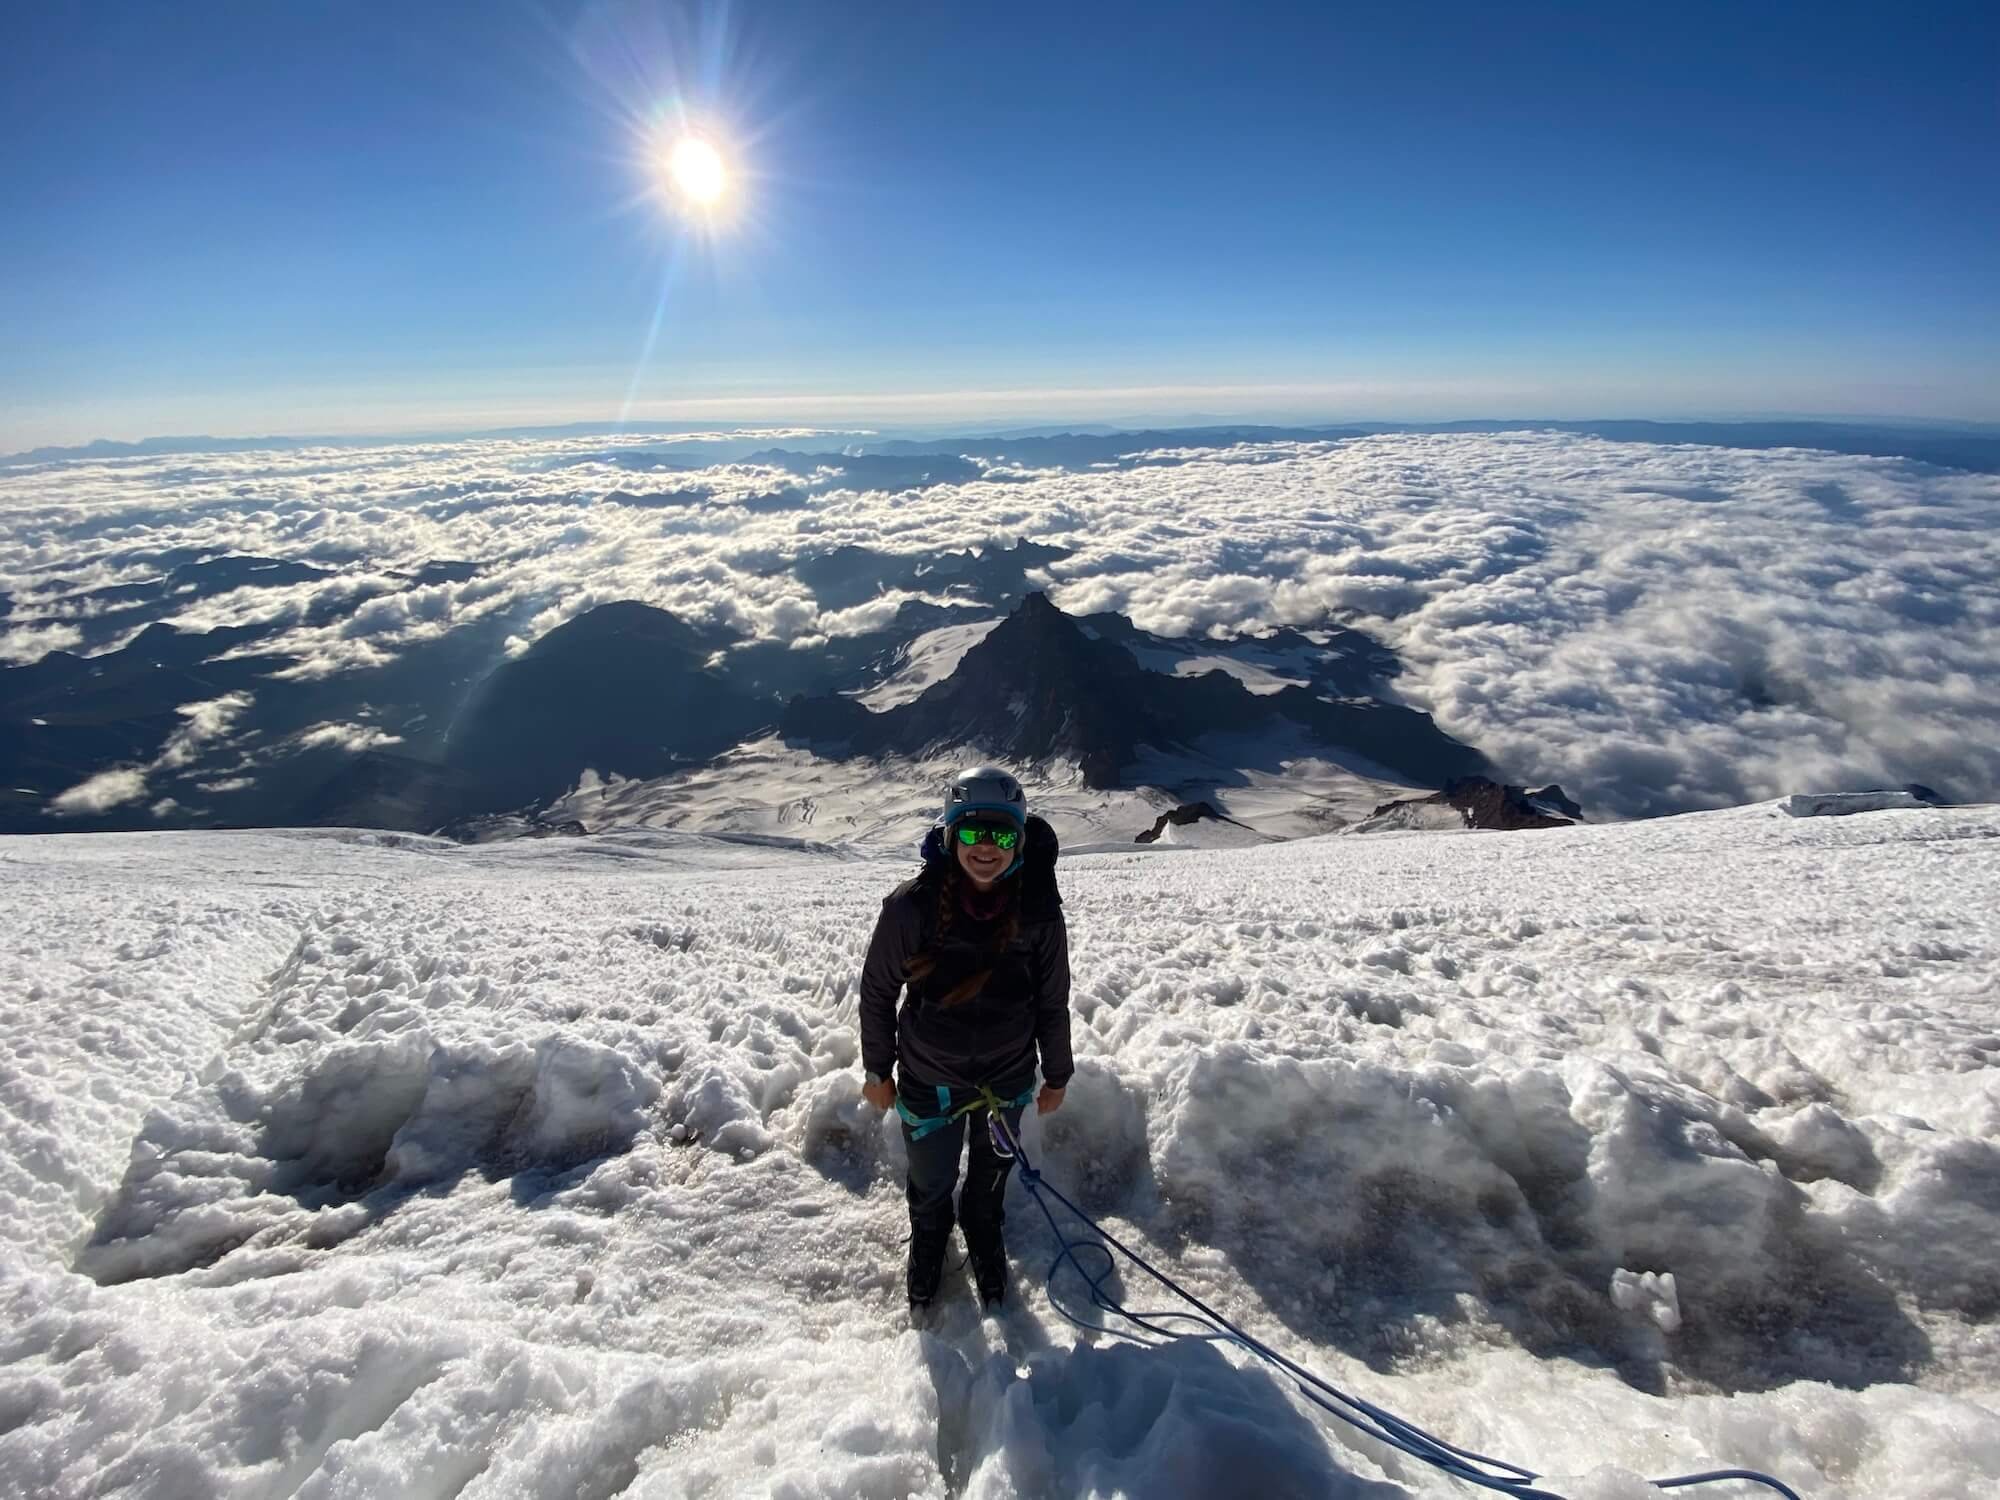  Sam climbing up Mt Rainier with her ropes team. Photo: Sam Goldklang 